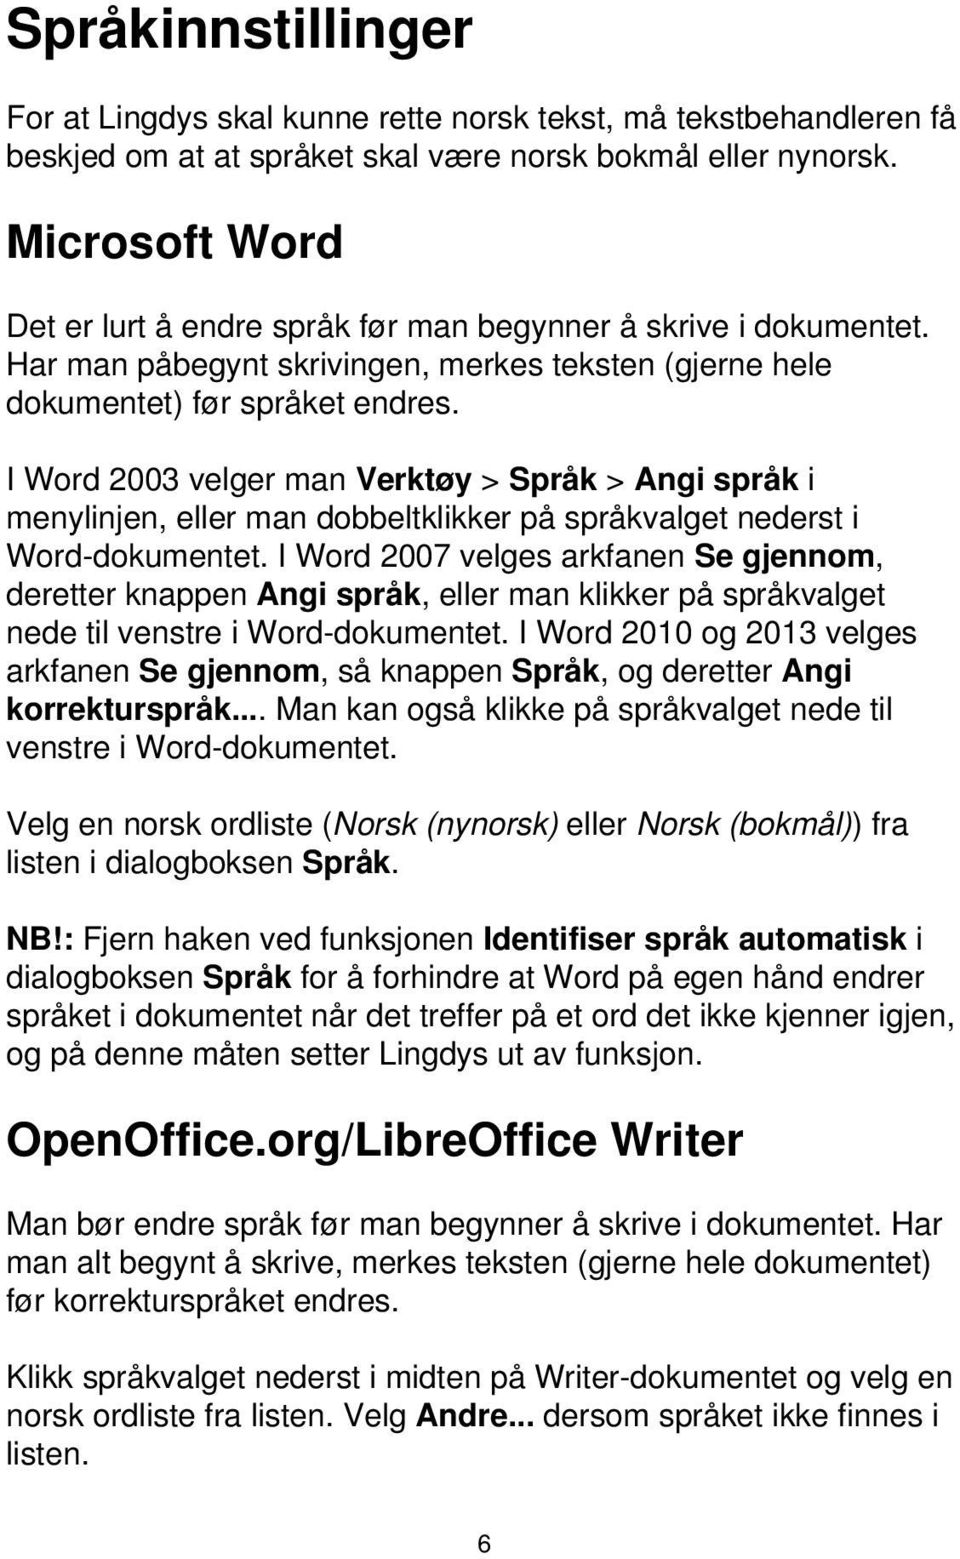 I Word 2003 velger man Verktøy > Språk > Angi språk i menylinjen, eller man dobbeltklikker på språkvalget nederst i Word-dokumentet.